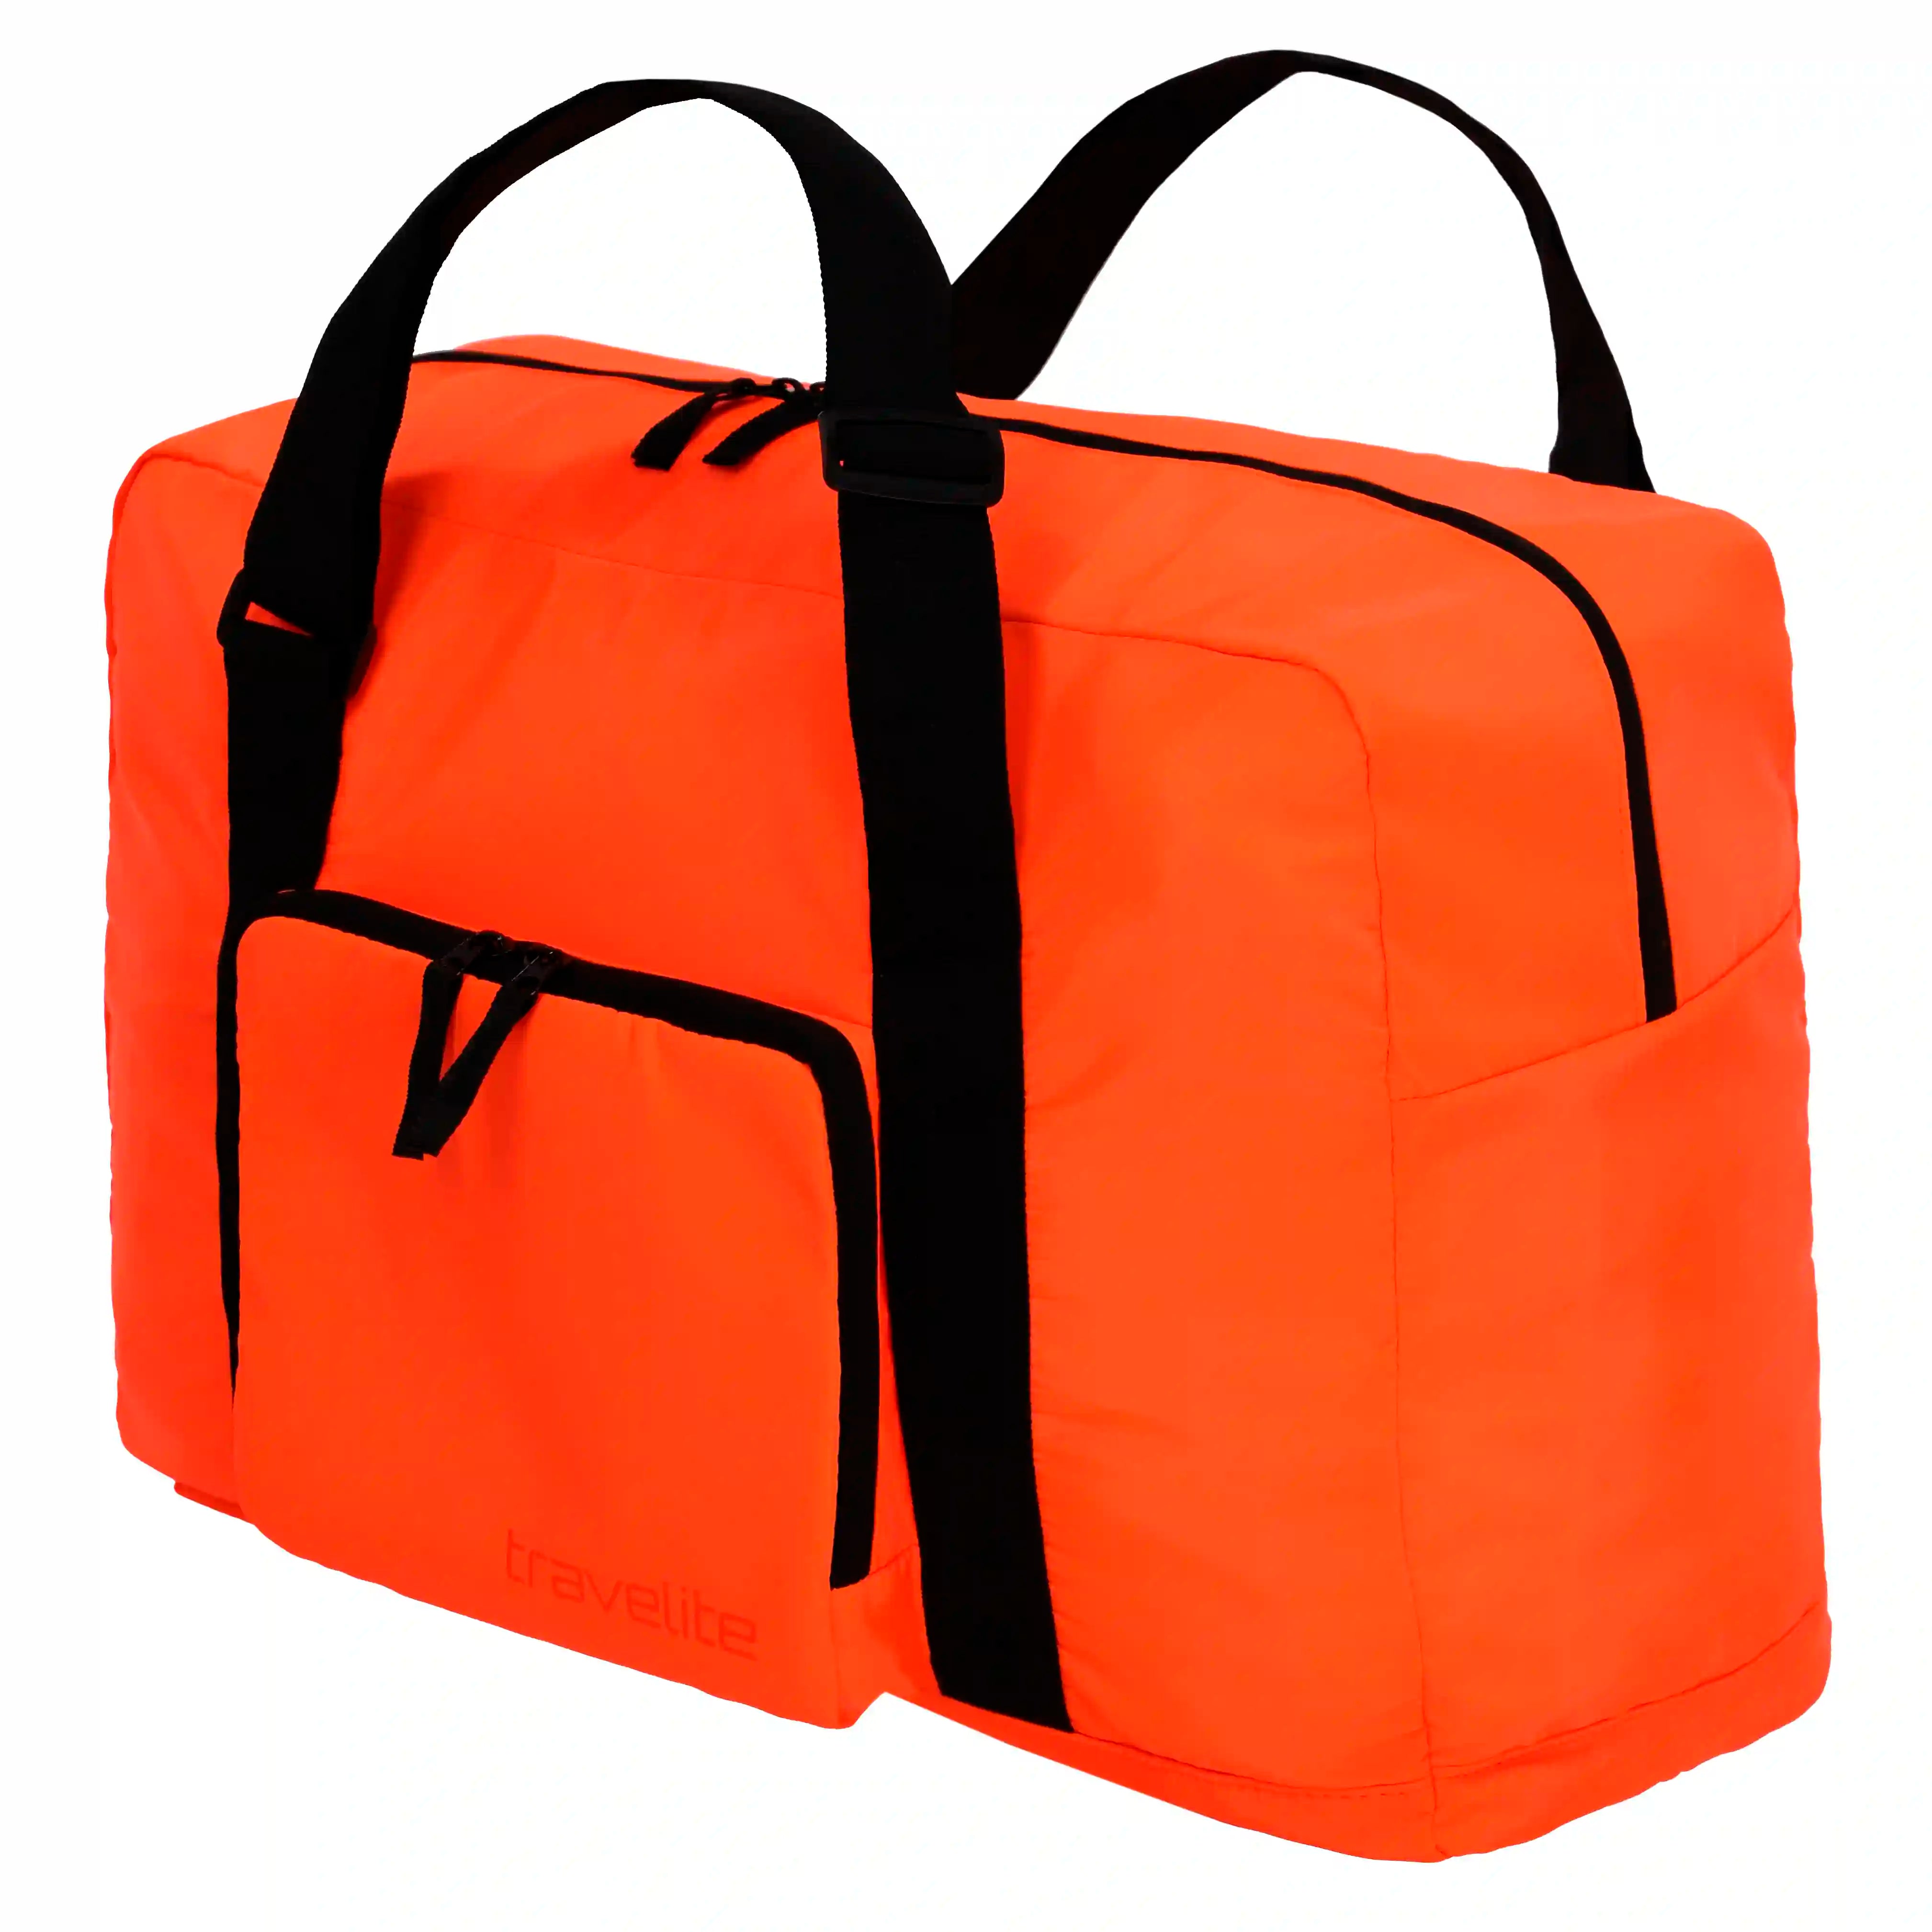 Travelite Accessories Folding Travel Bag 44 cm - Orange